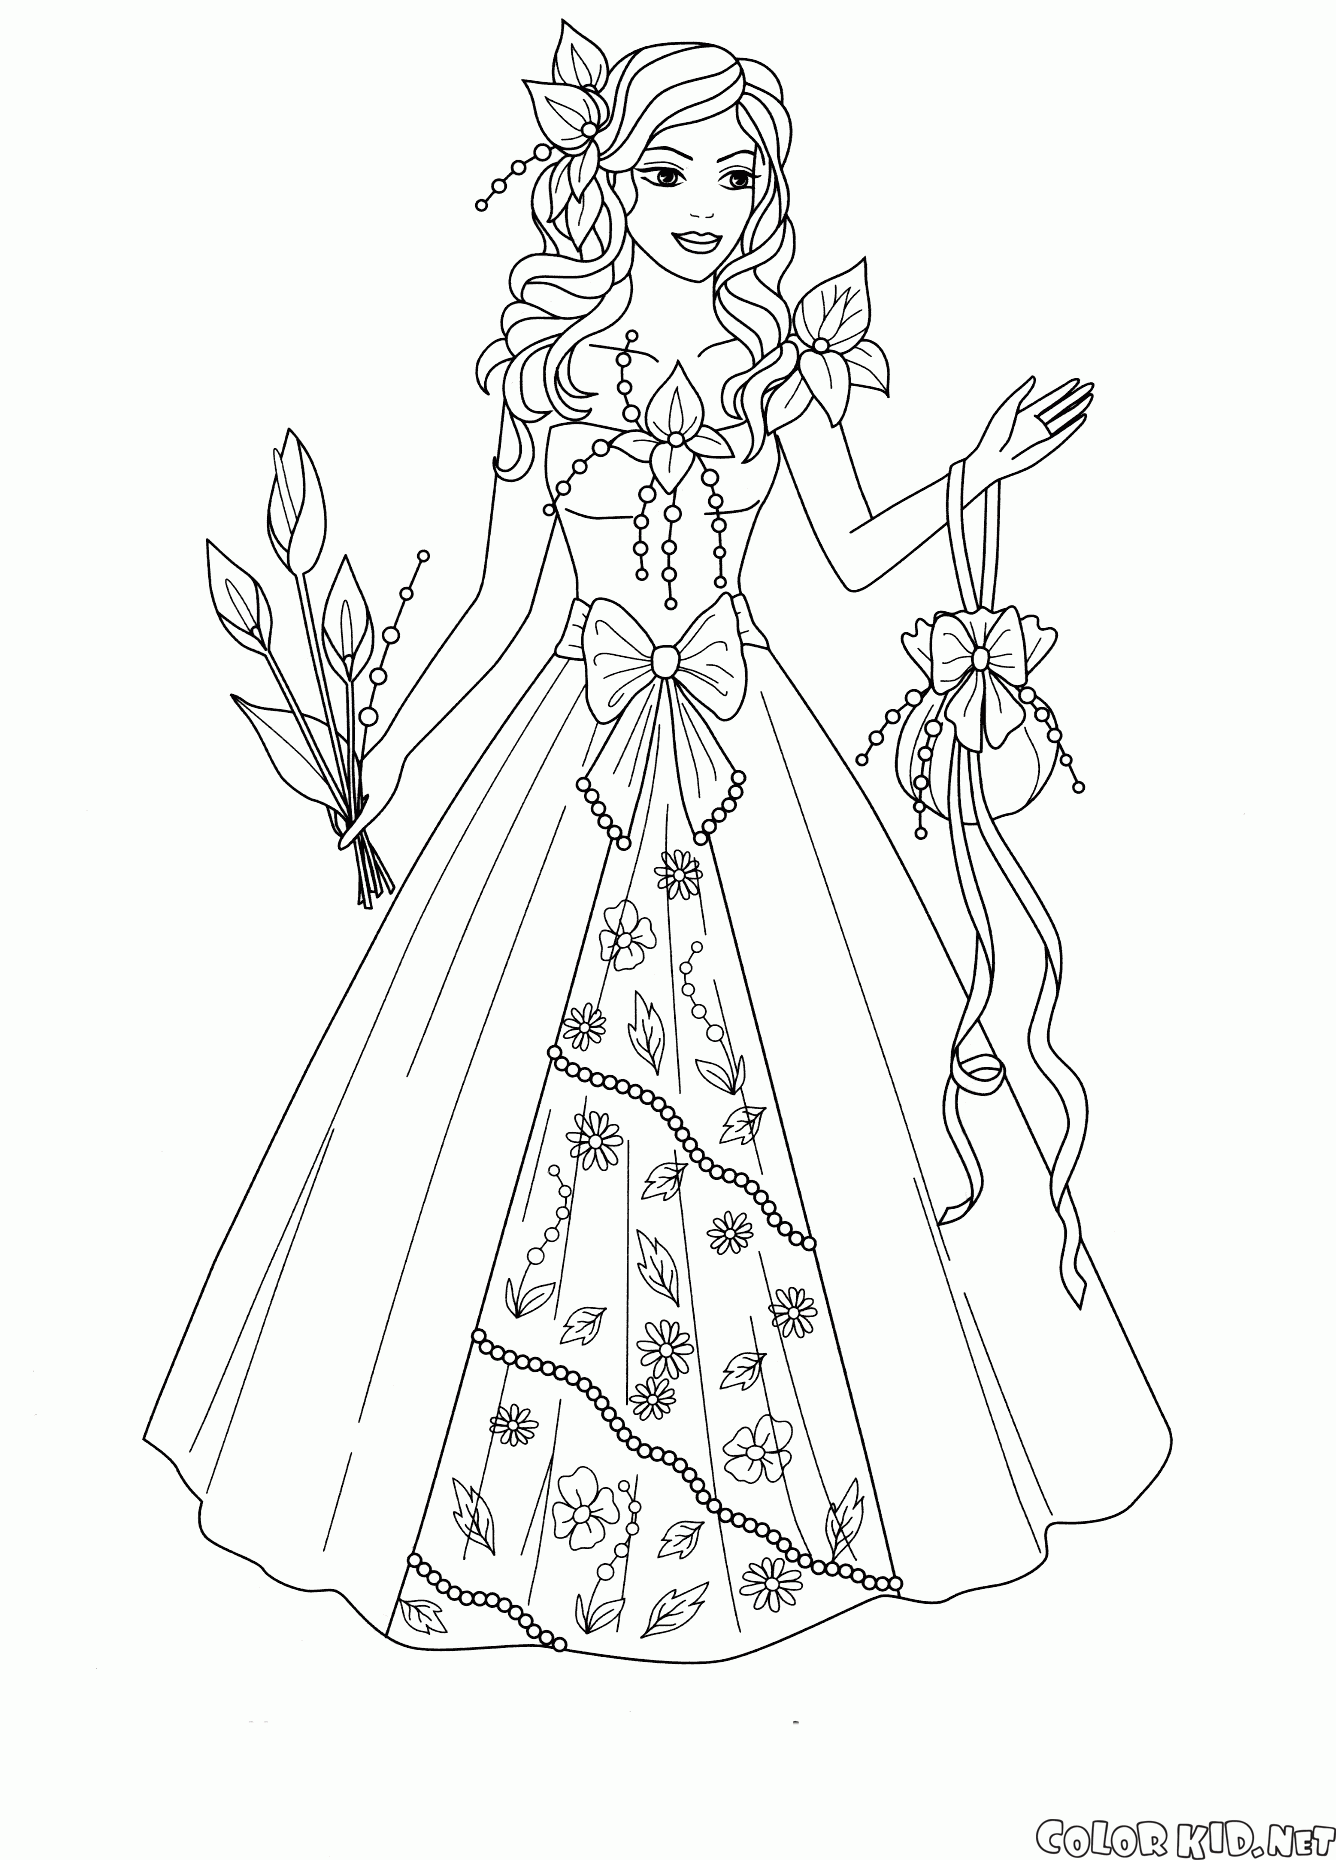 Disegni da colorare - La principessa del regno dei fiori